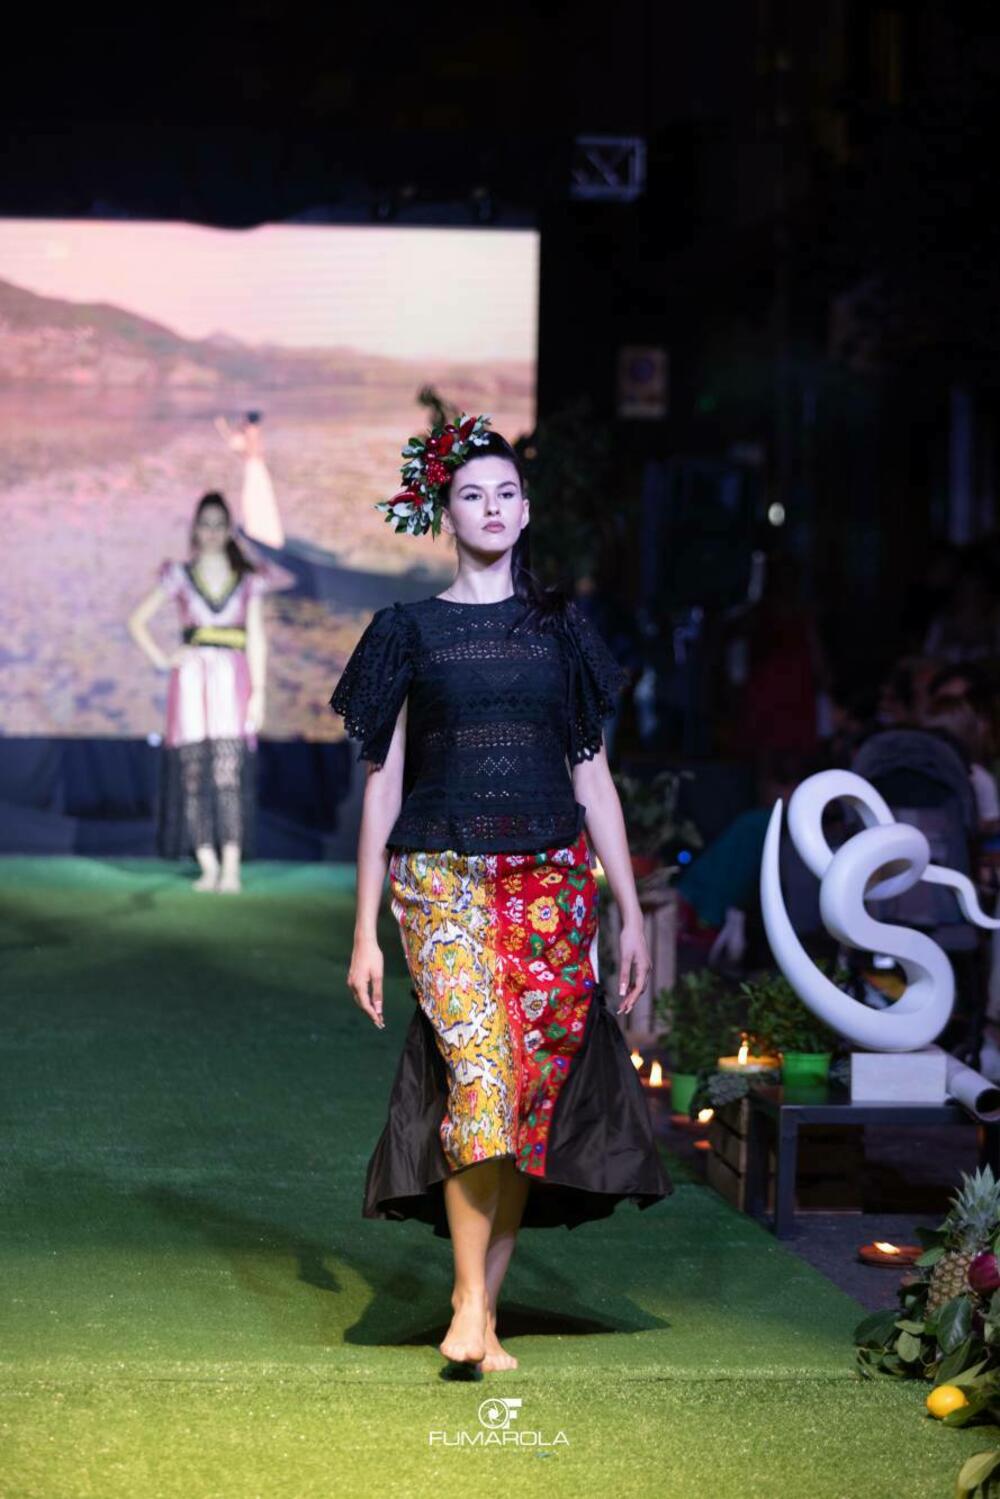 <p>Crnogorska modna dizajnerka Marina Banović, prenosi utiske sa predstavljanja modela u Italiji, a otkriva i planove za prikazivanje kolekcija u Crnoj Gori</p>